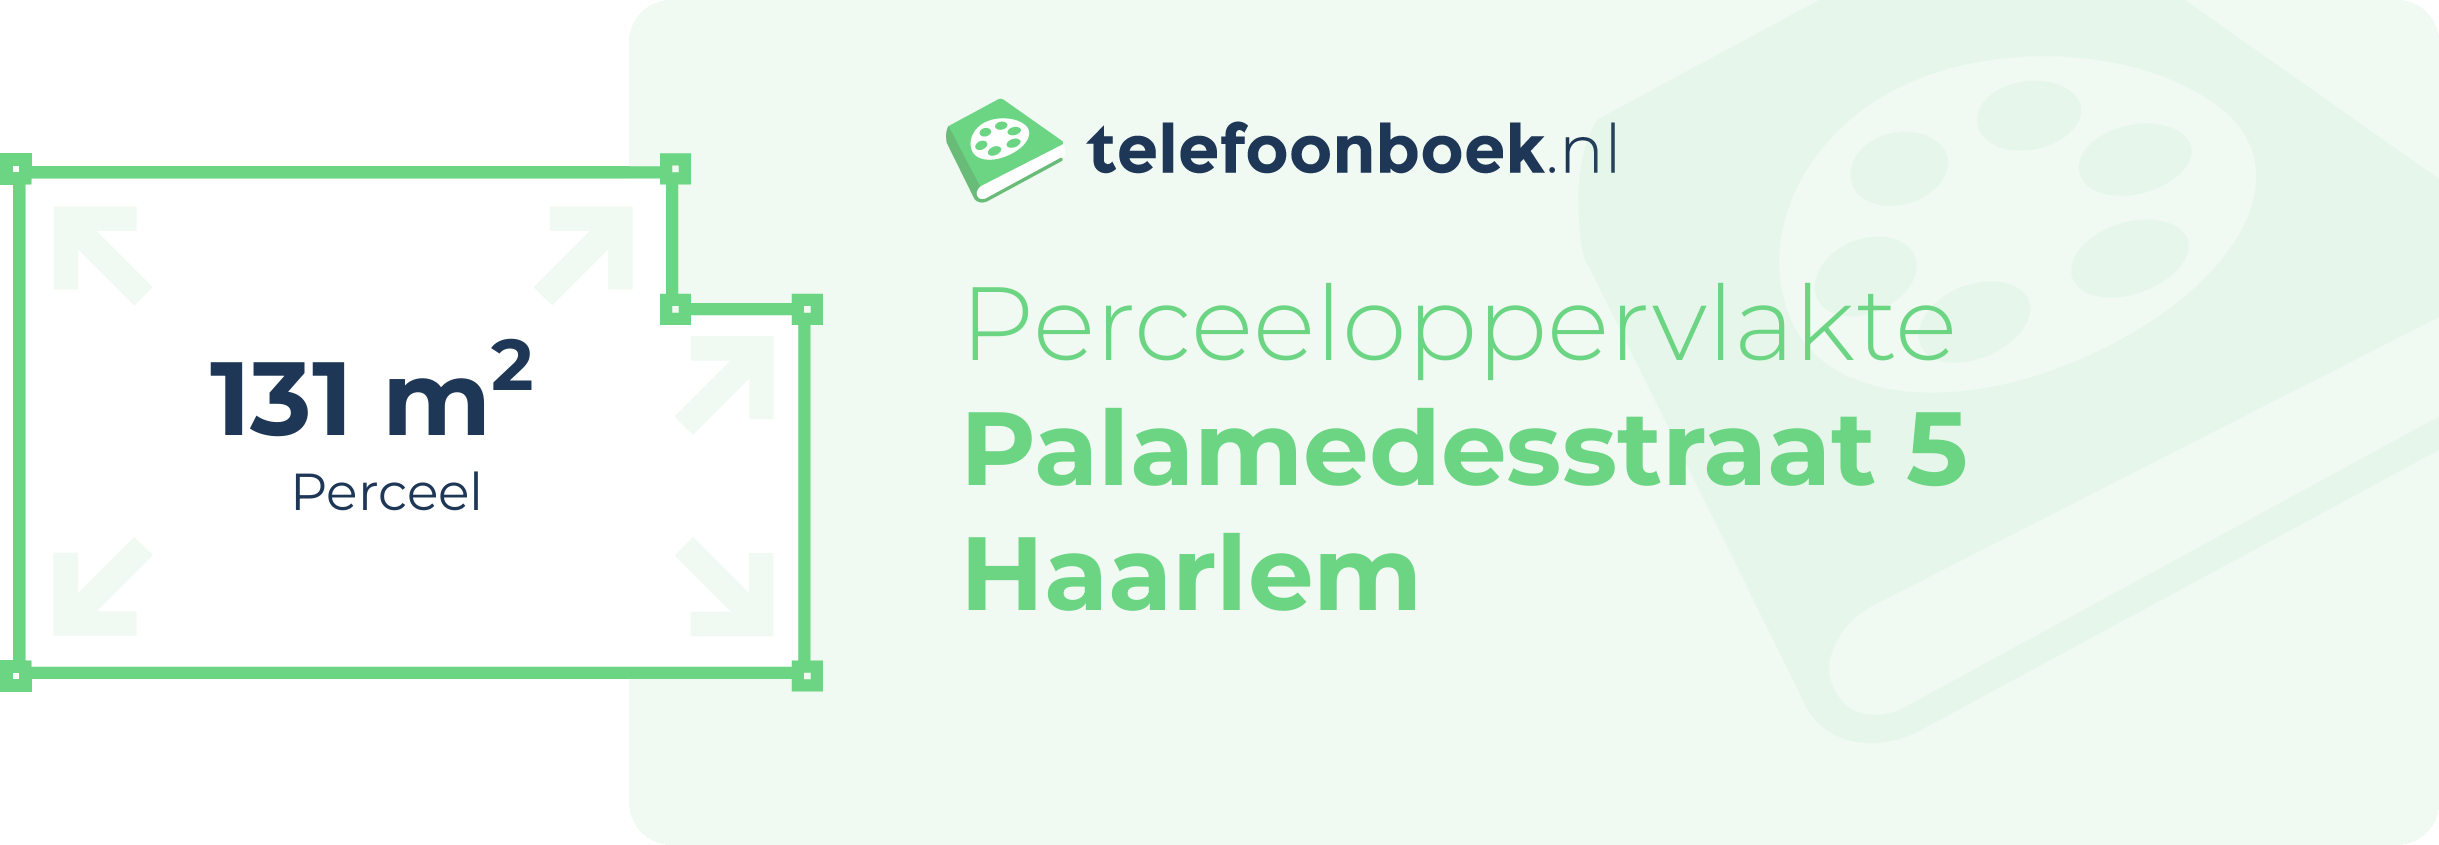 Perceeloppervlakte Palamedesstraat 5 Haarlem